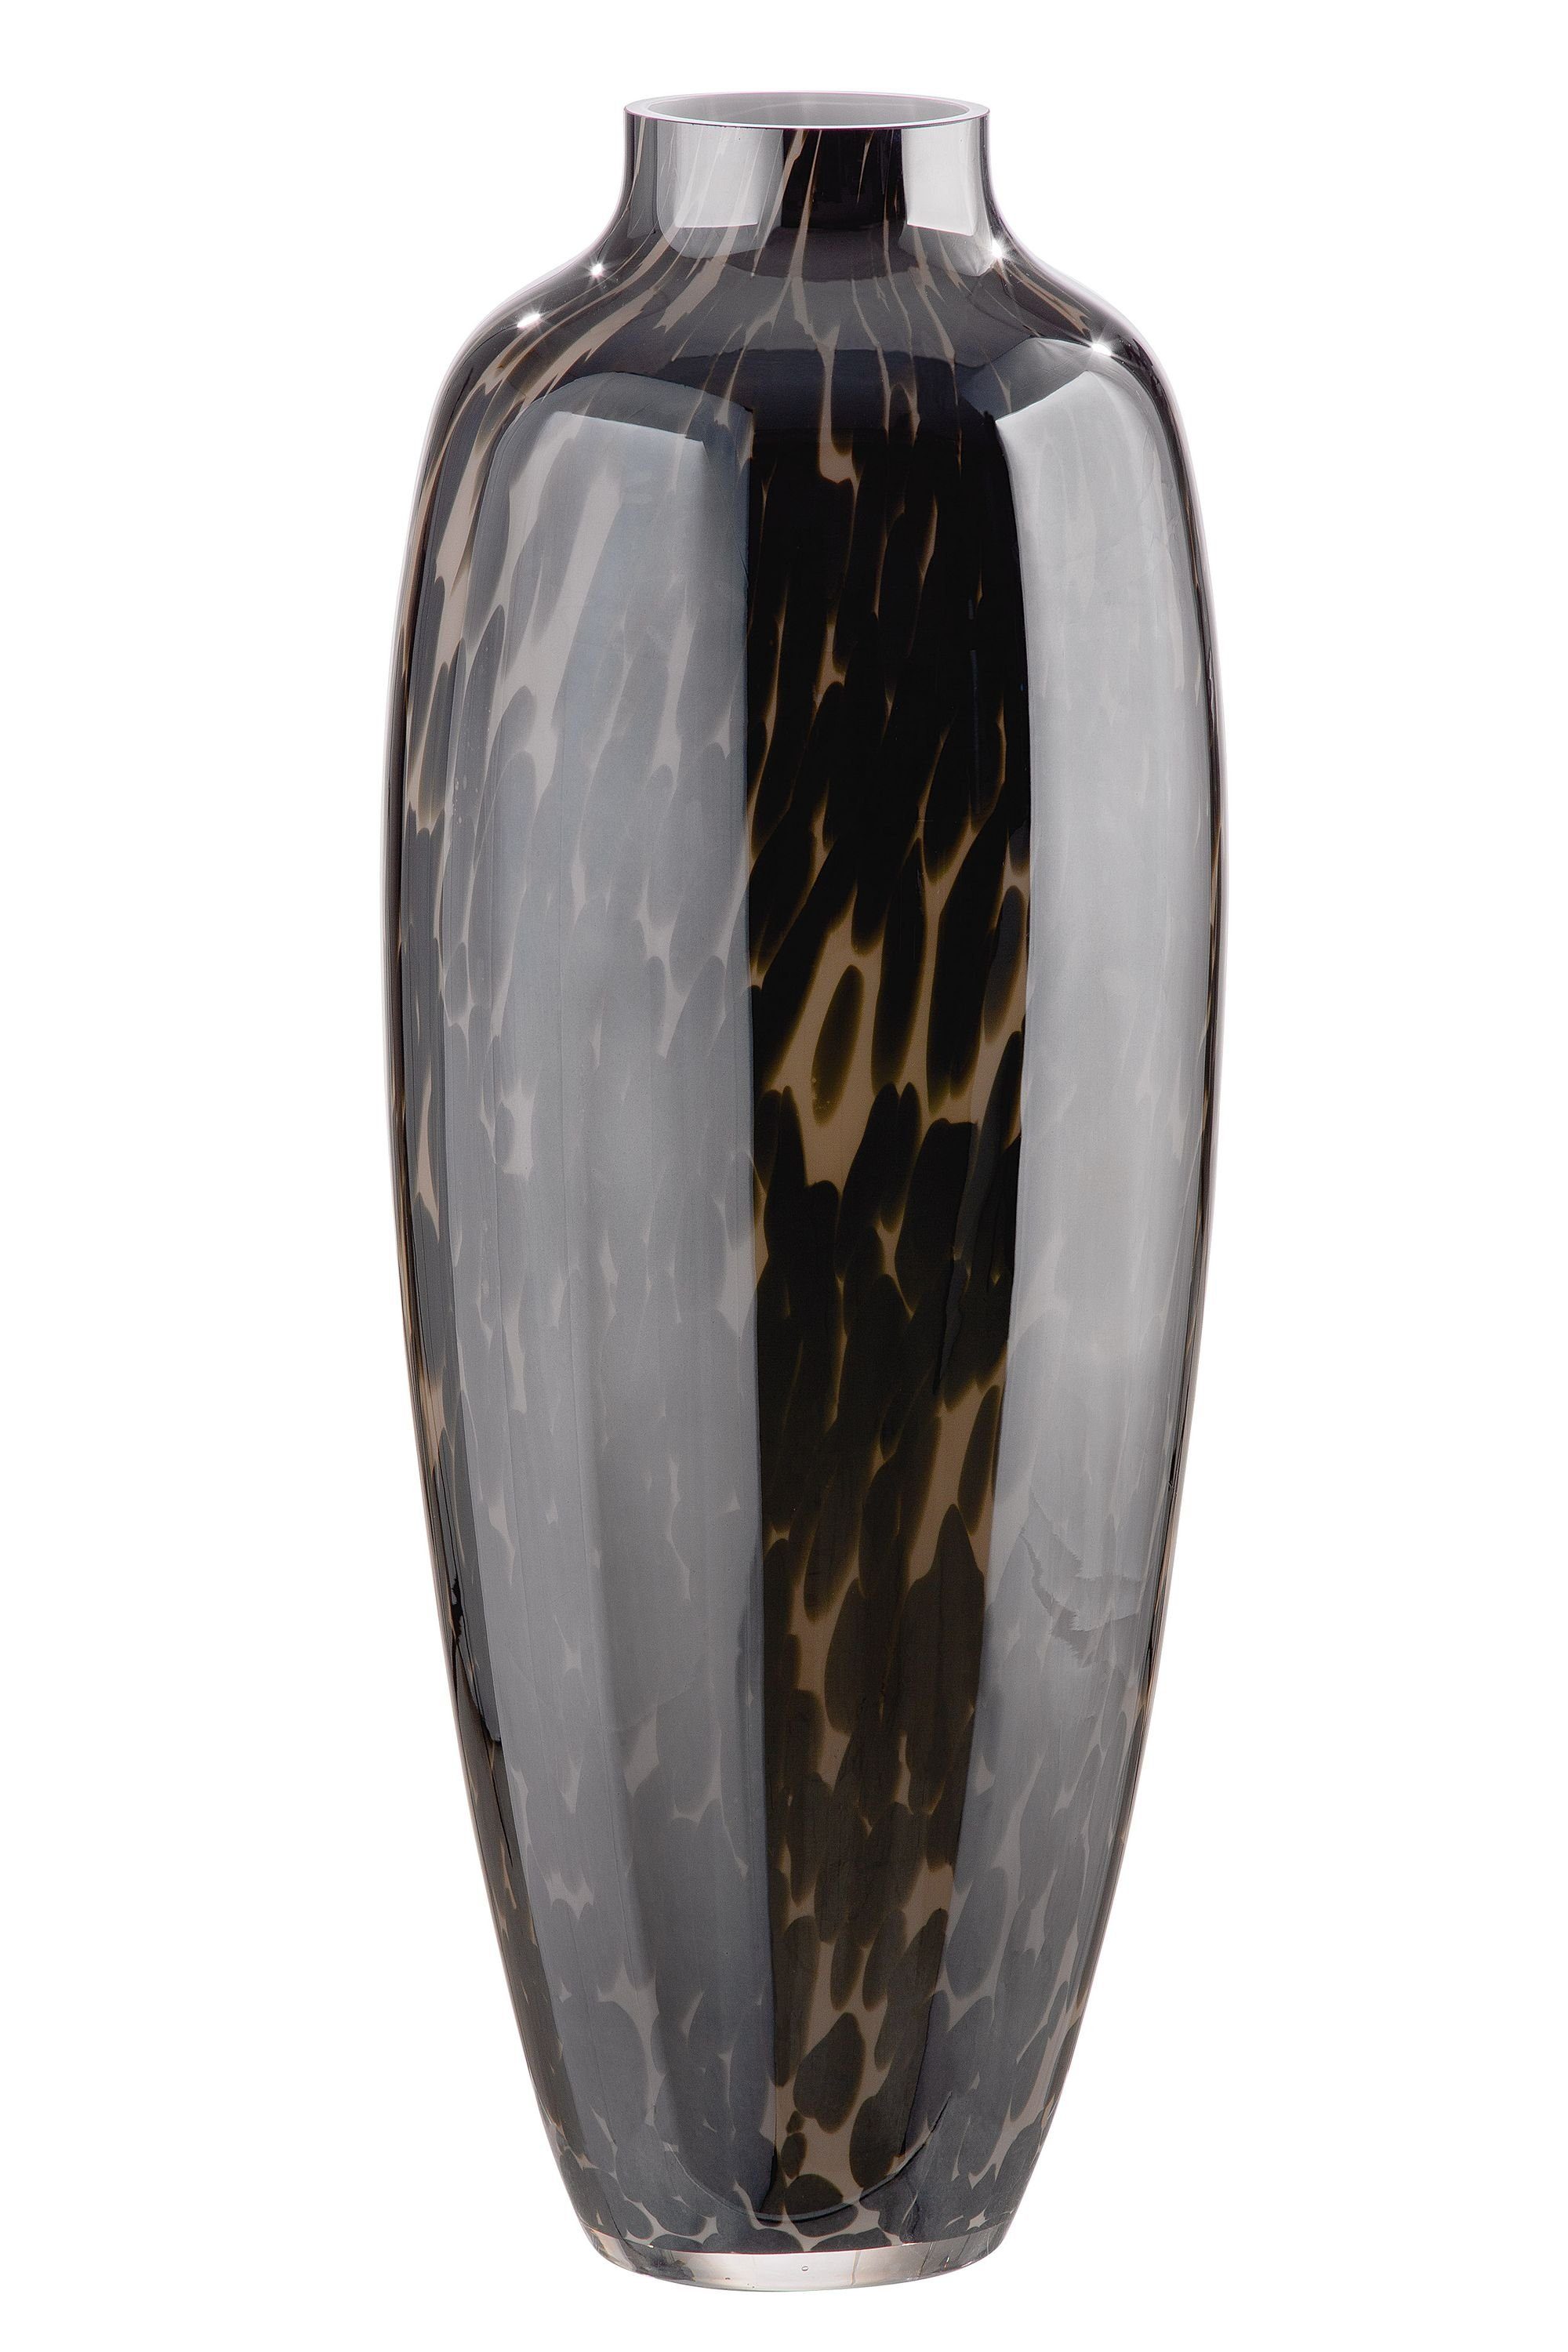 GILDE Dekovase GILDE Vase Afrika - braun-creme - H. 52,5cm x D. 21cm